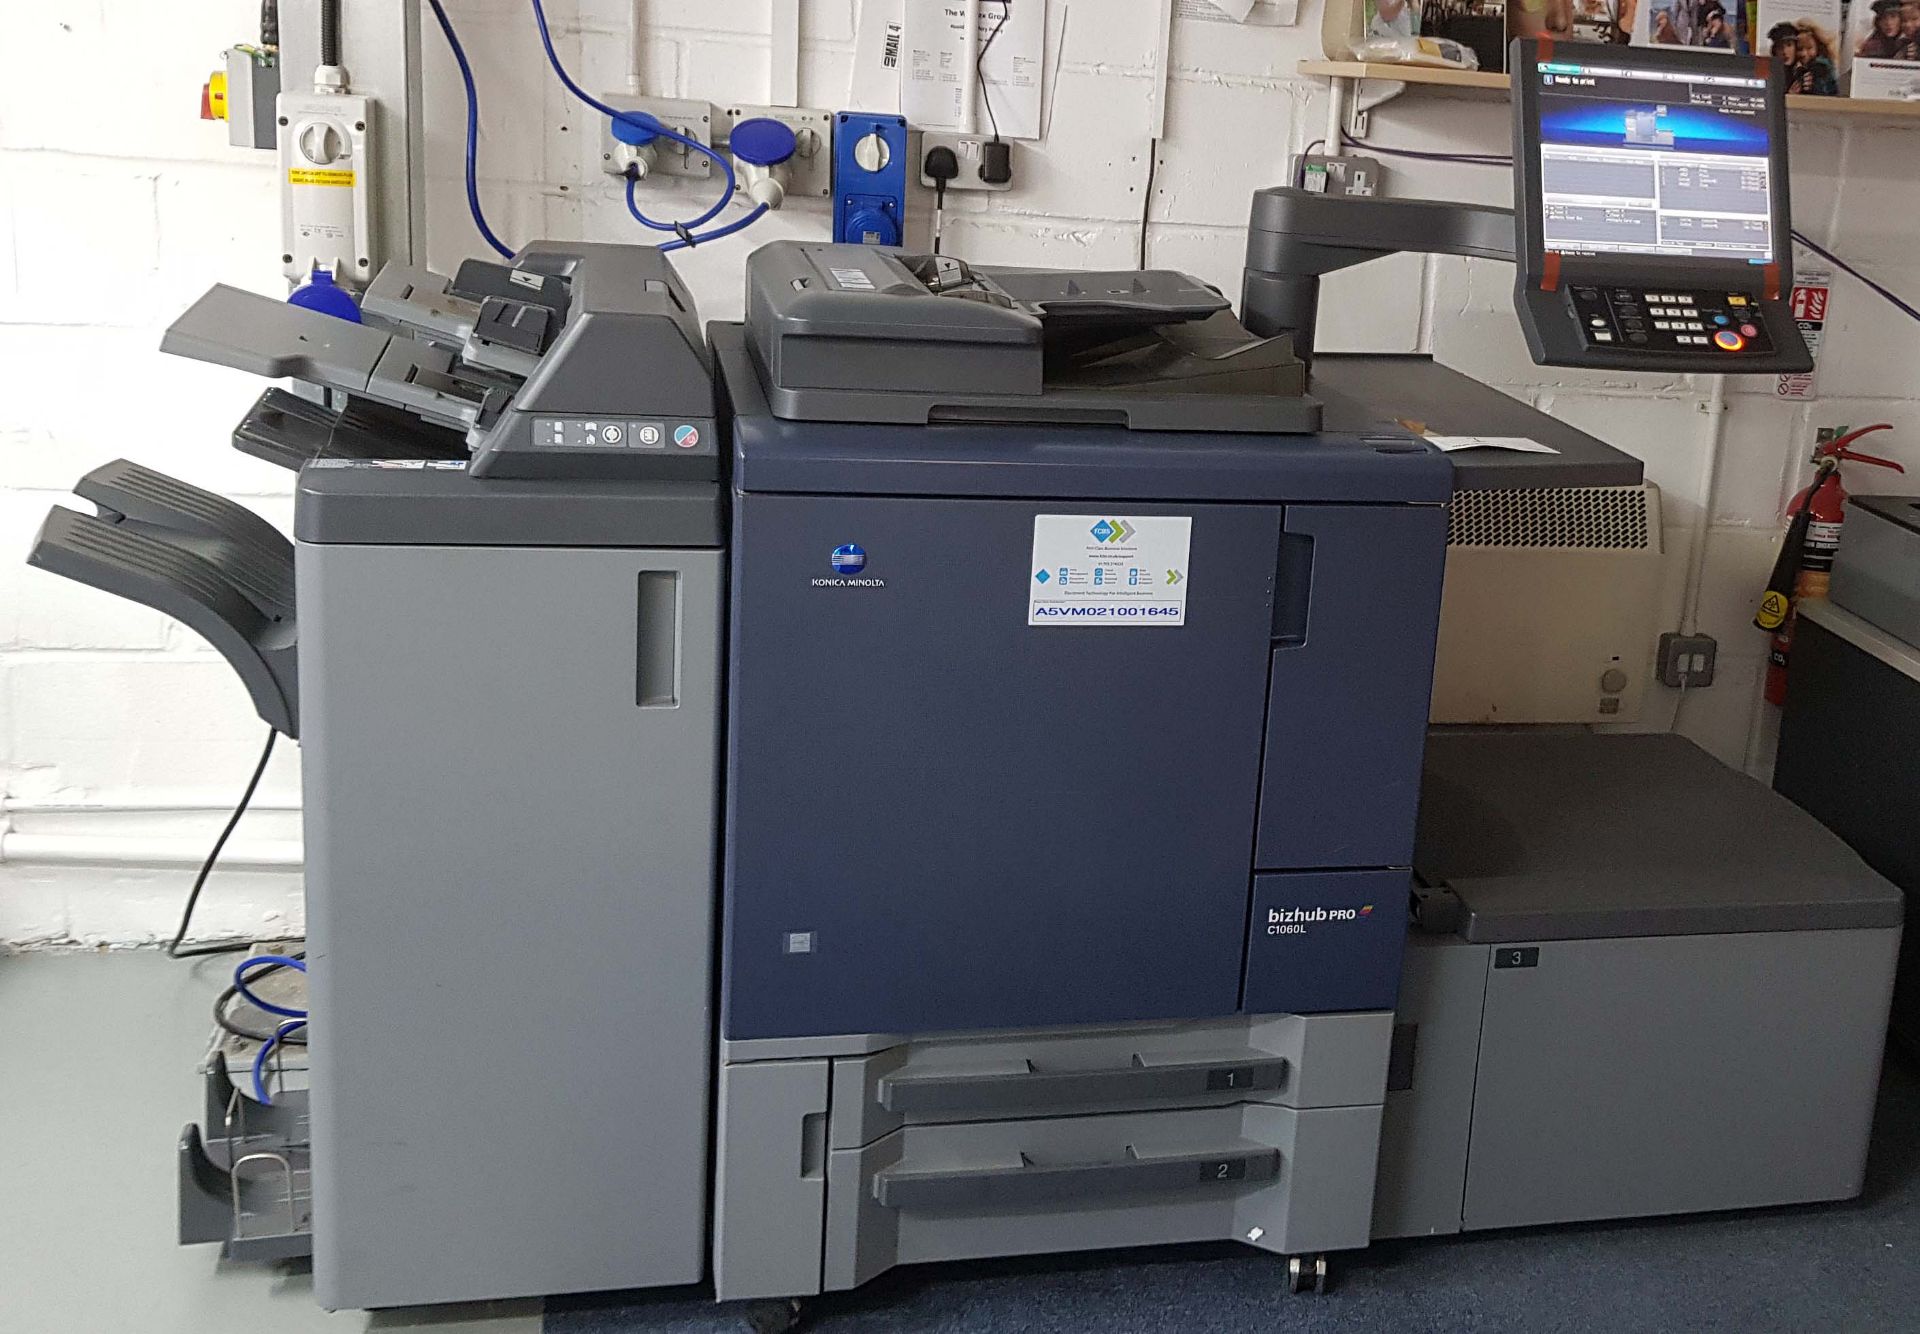 A KONICA MINOLTA Bizhub Pro C1060L Digital Colour Printing Machine,